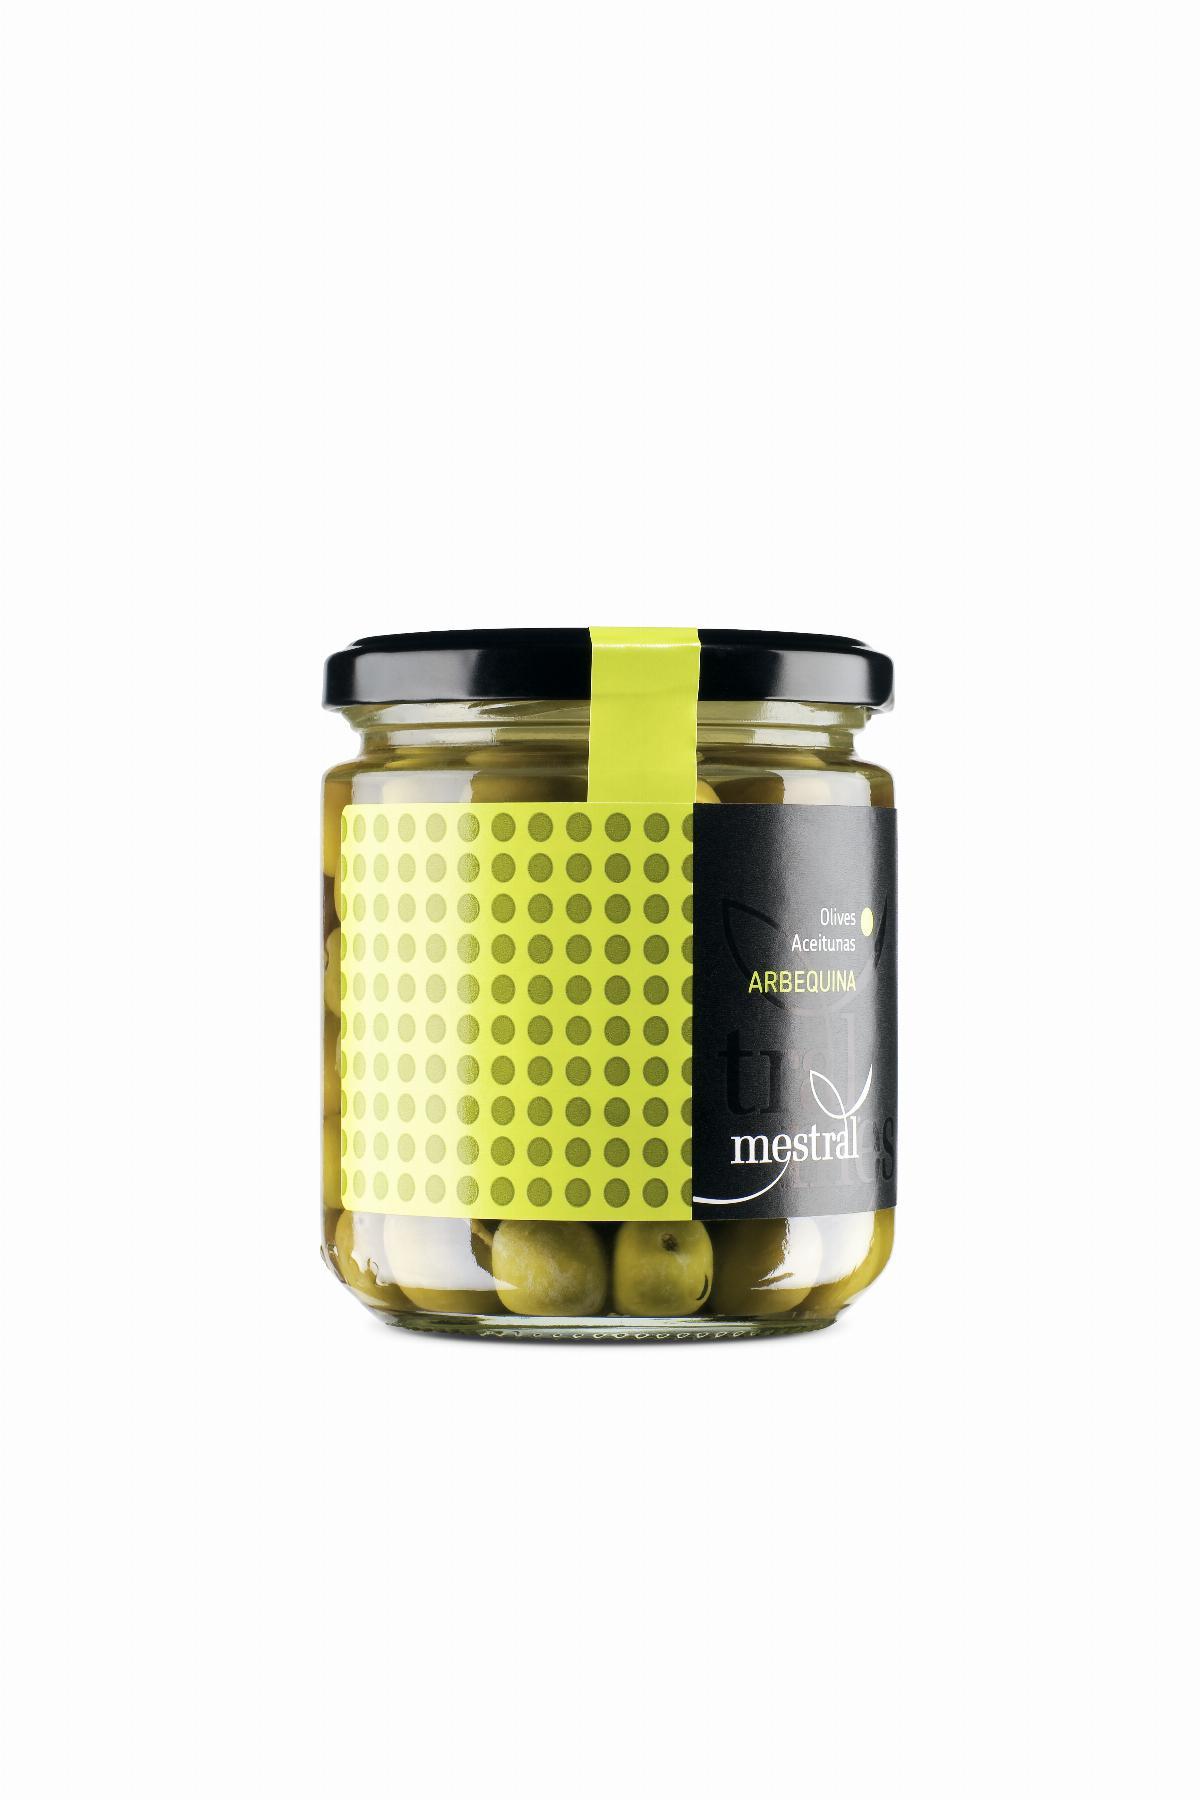 Olives - Arbequina Olives Mestral, glass jar 210g - Mestral Cambrils